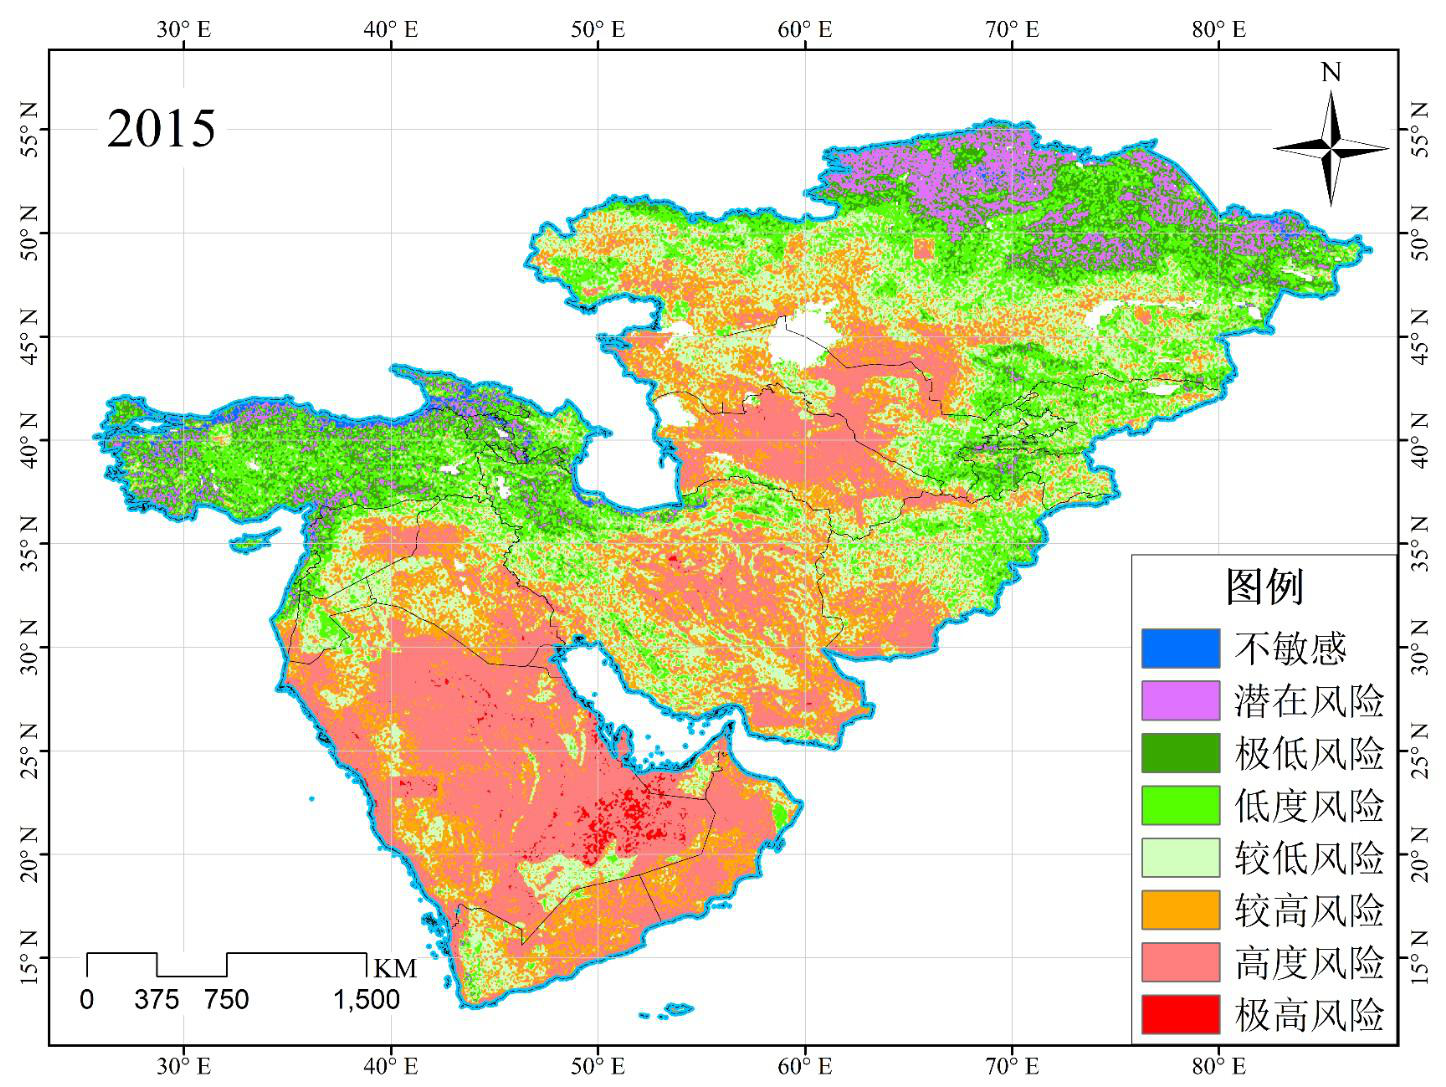 中亚-西亚地区荒漠化风险等级评估图（2015）